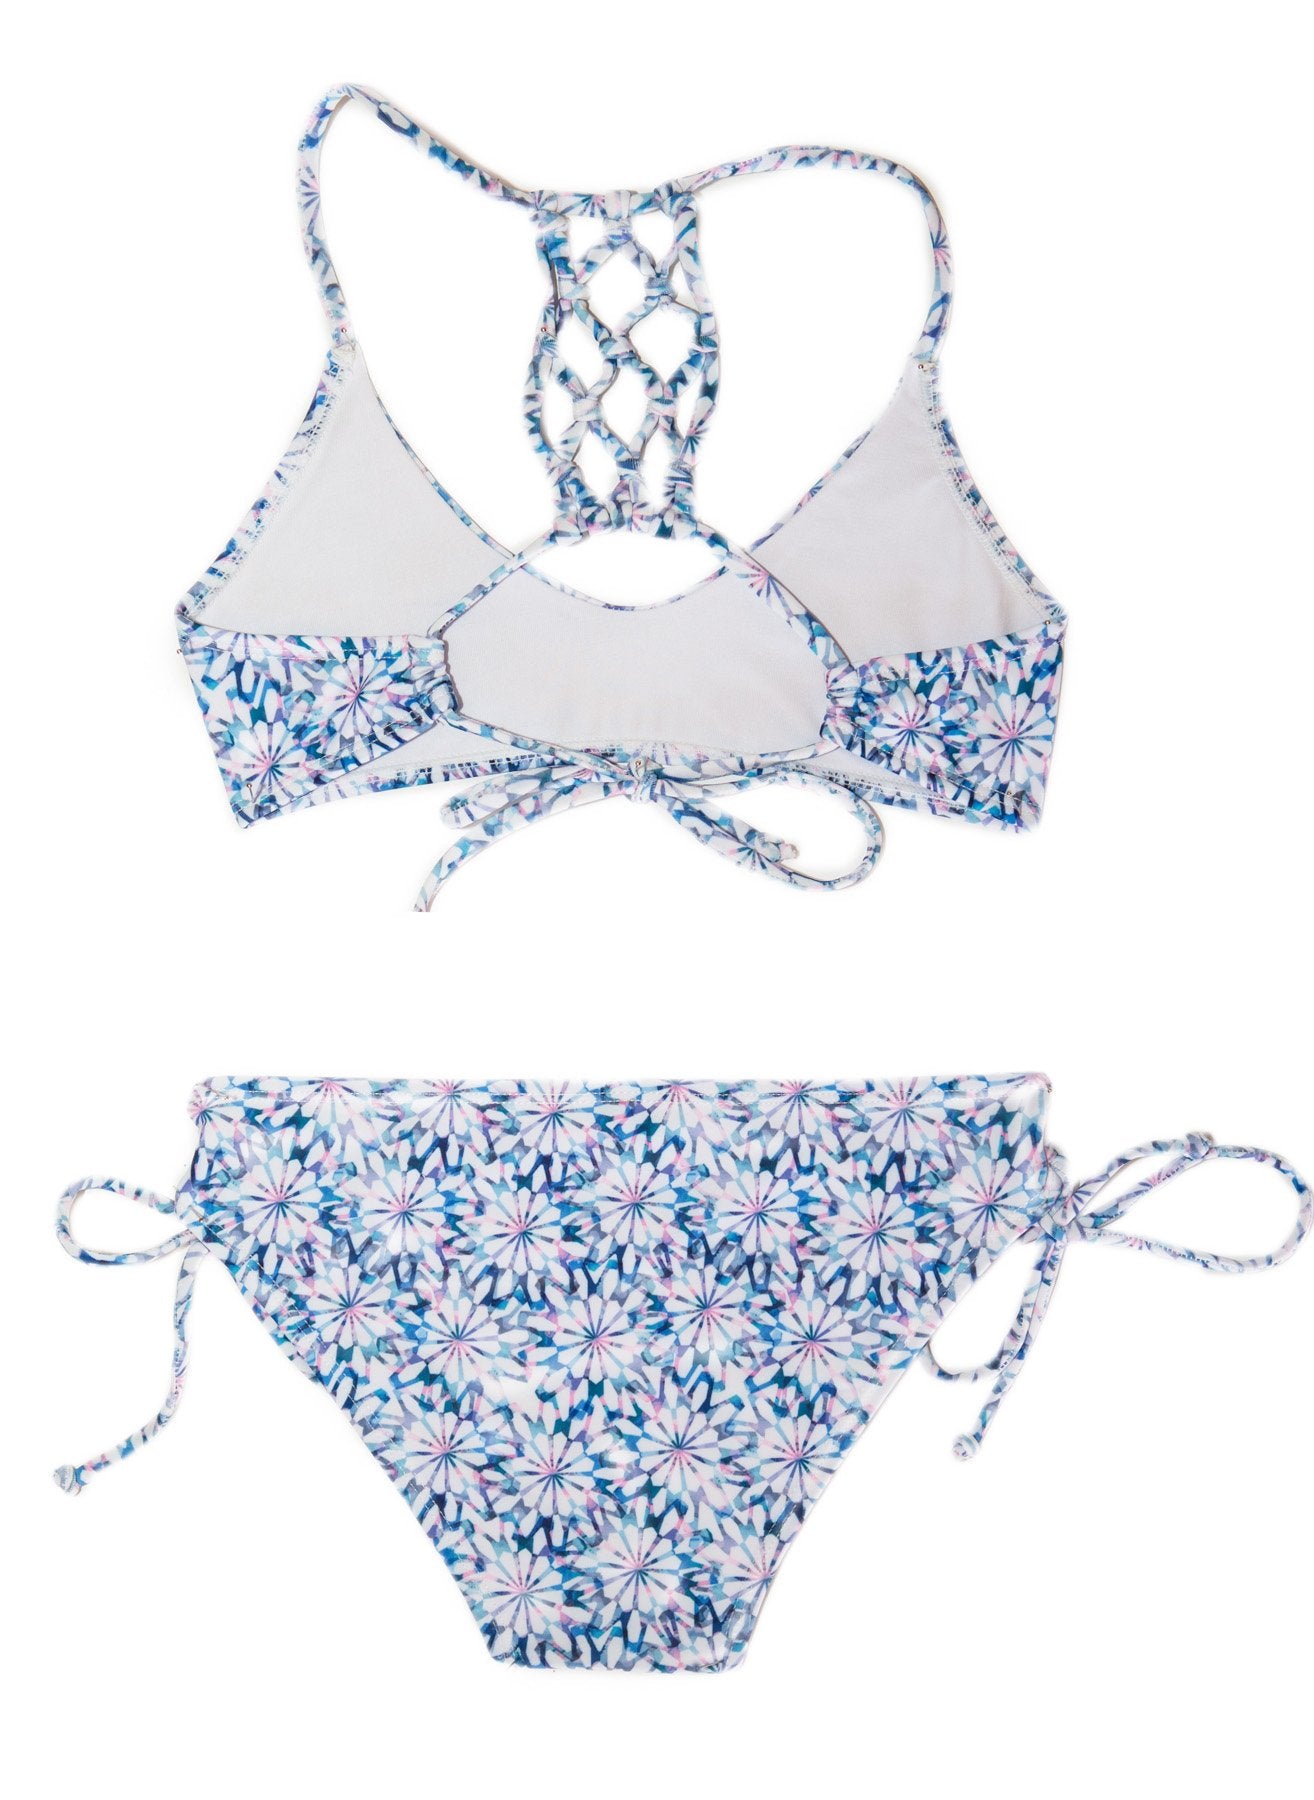 Daisy Blue Girls Bikini - Chance Loves Swimwear